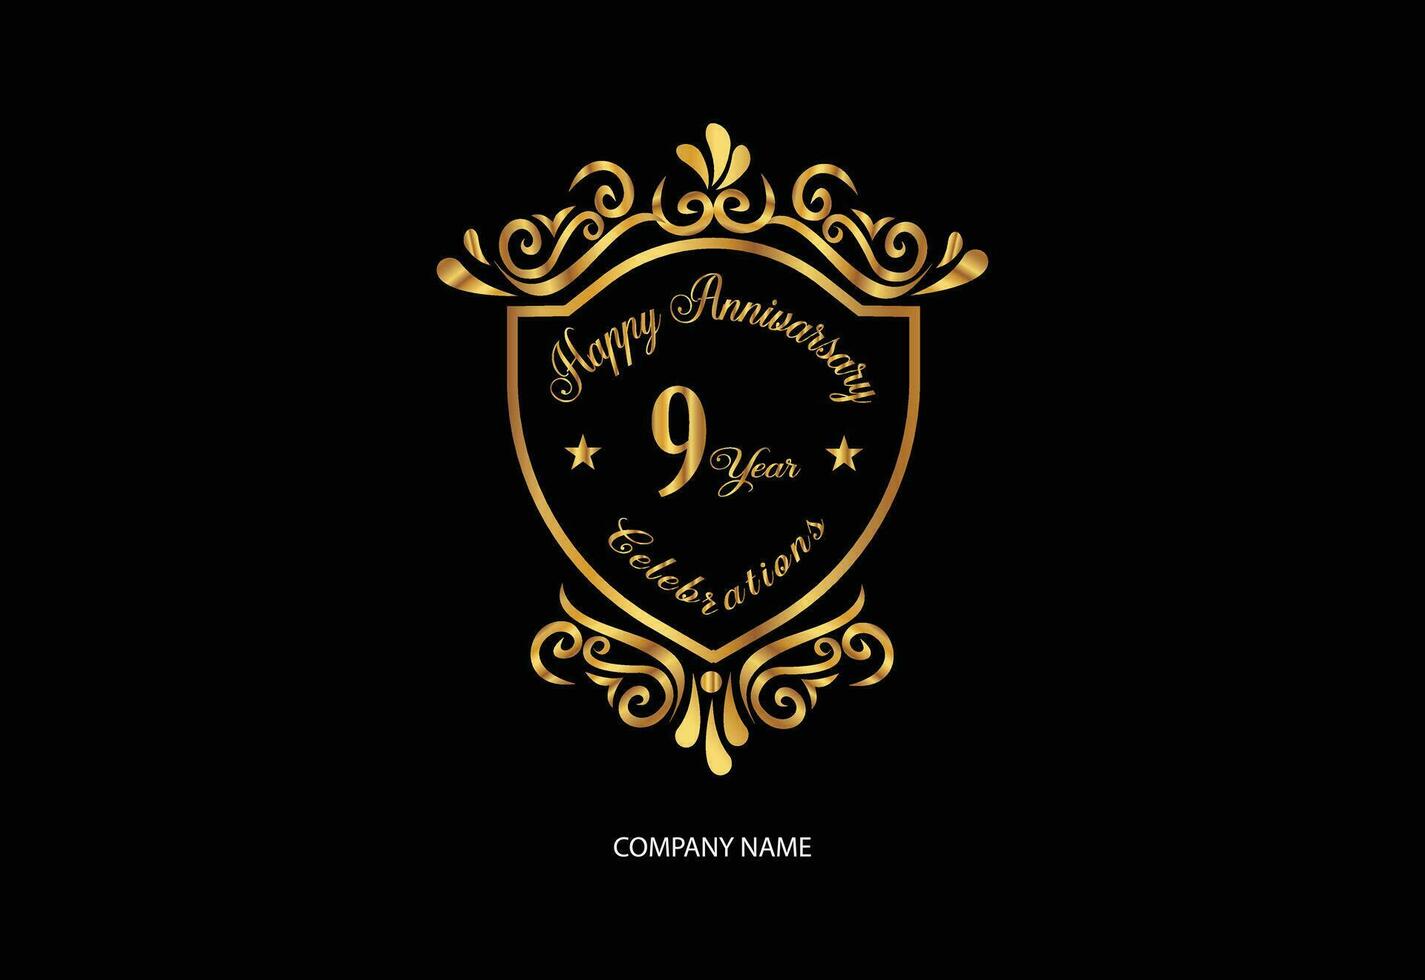 9 9 aniversario celebracion logotipo con escritura dorado color elegante diseño vector